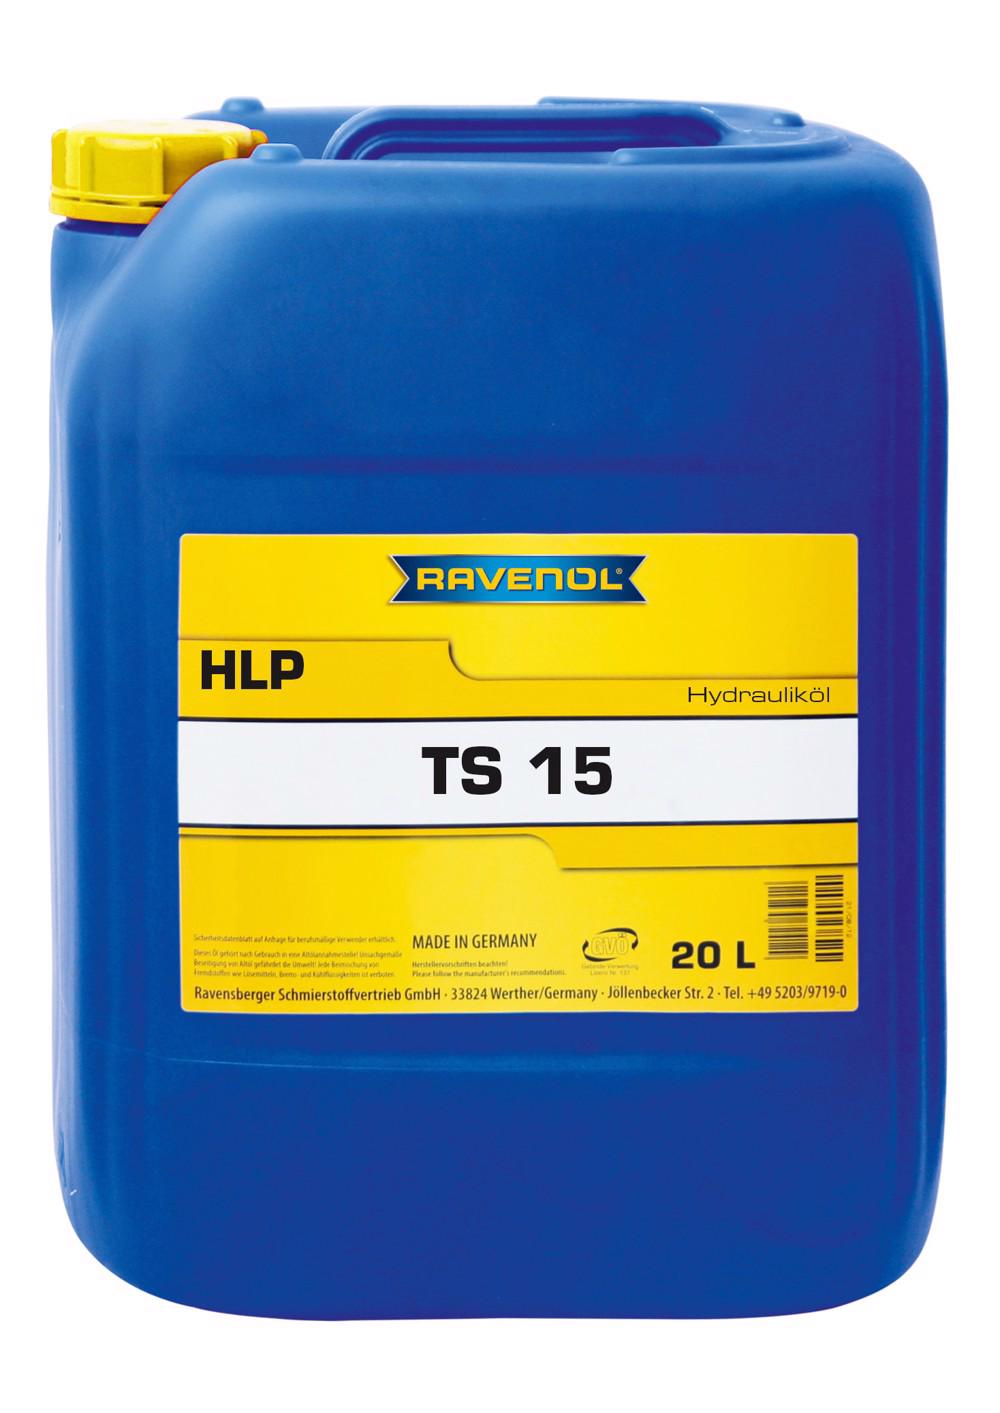 RAVENOL Hydraulikoel TS 15 (HLP)  20 L